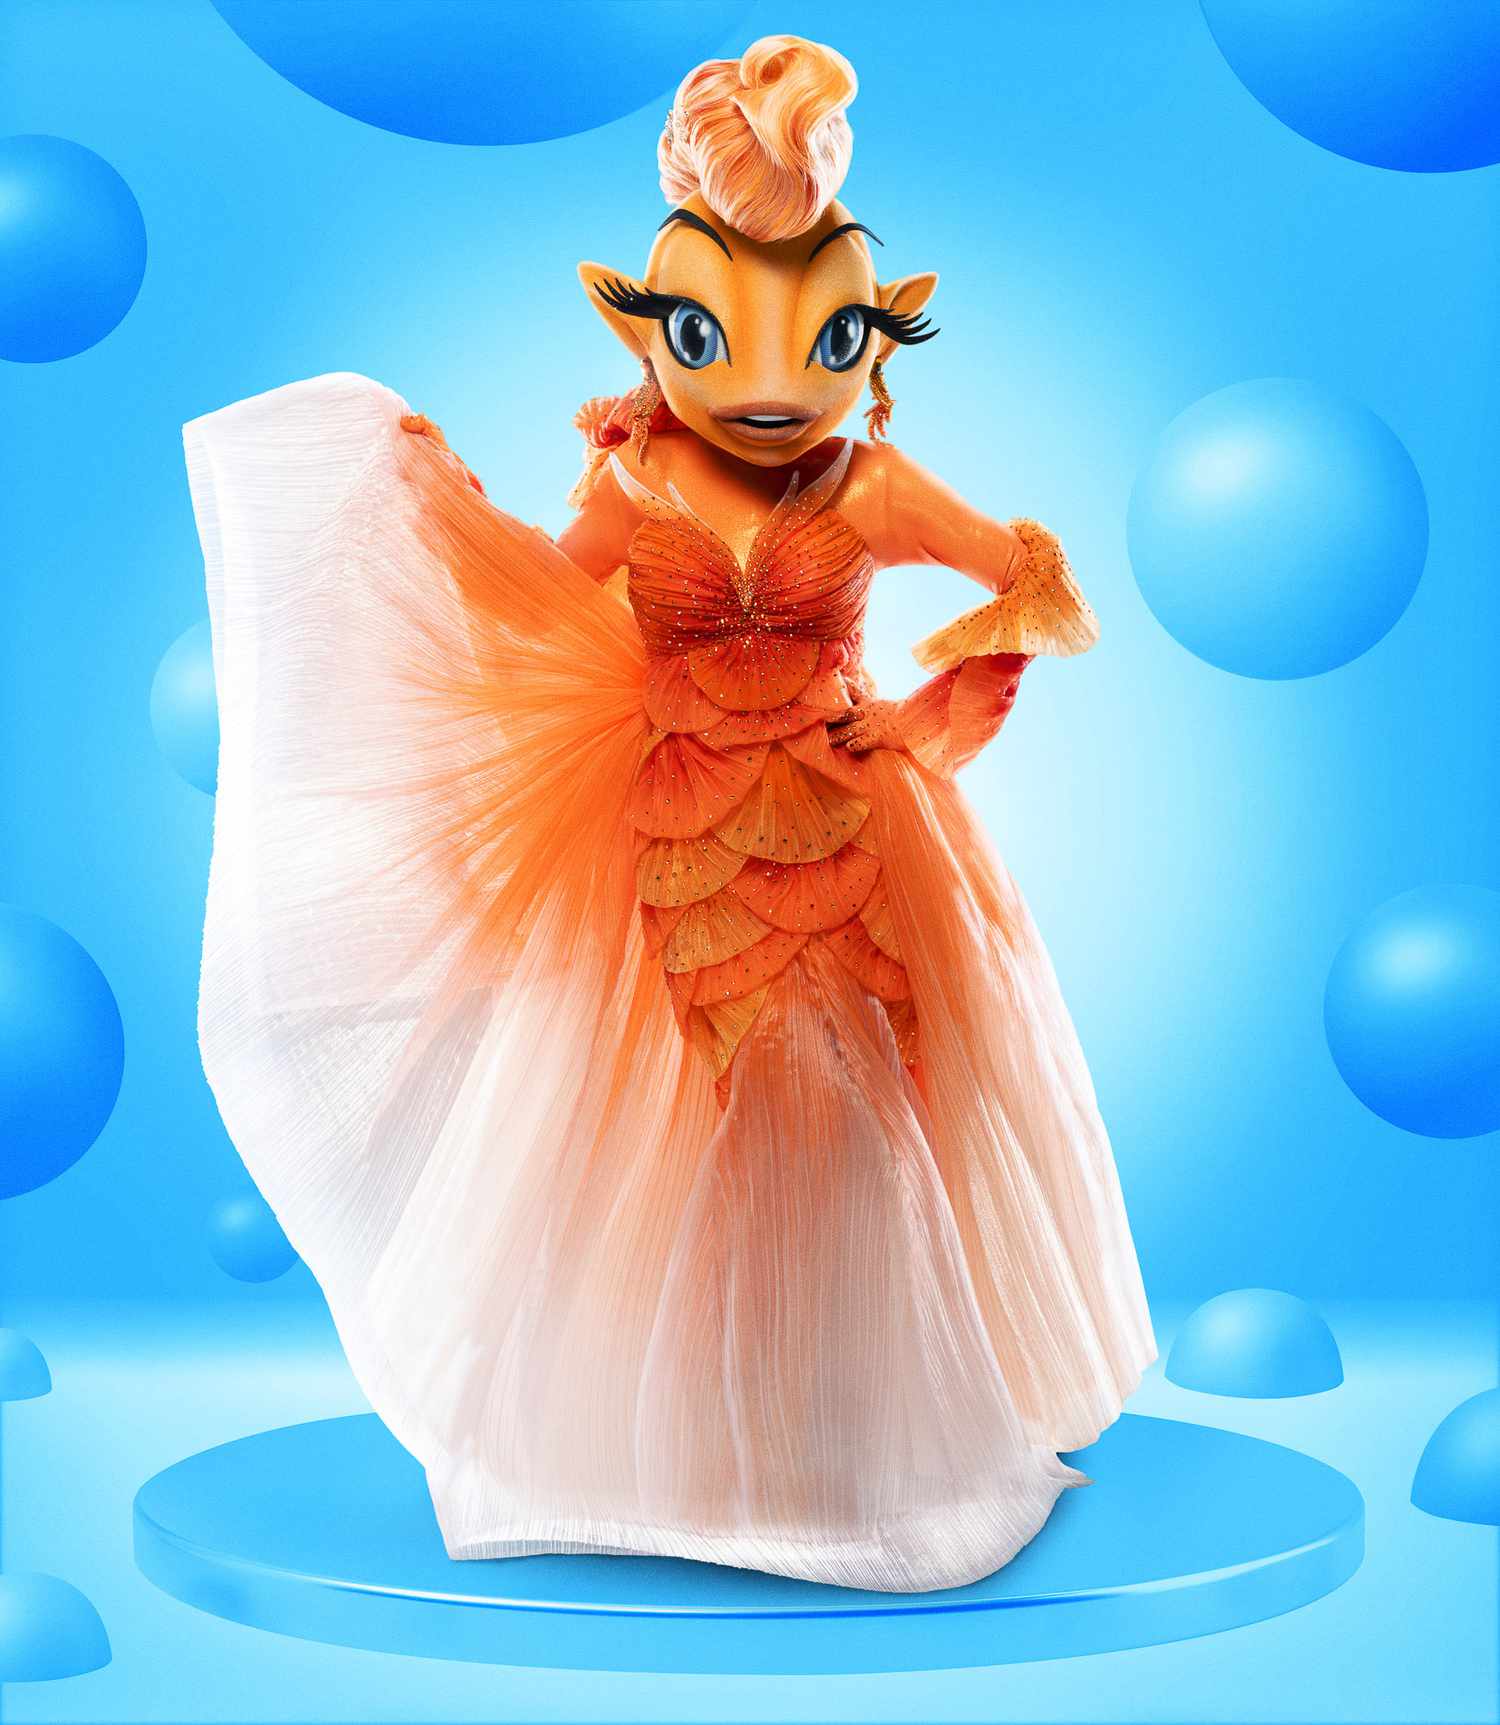 THE MASKED SINGER: Goldfish